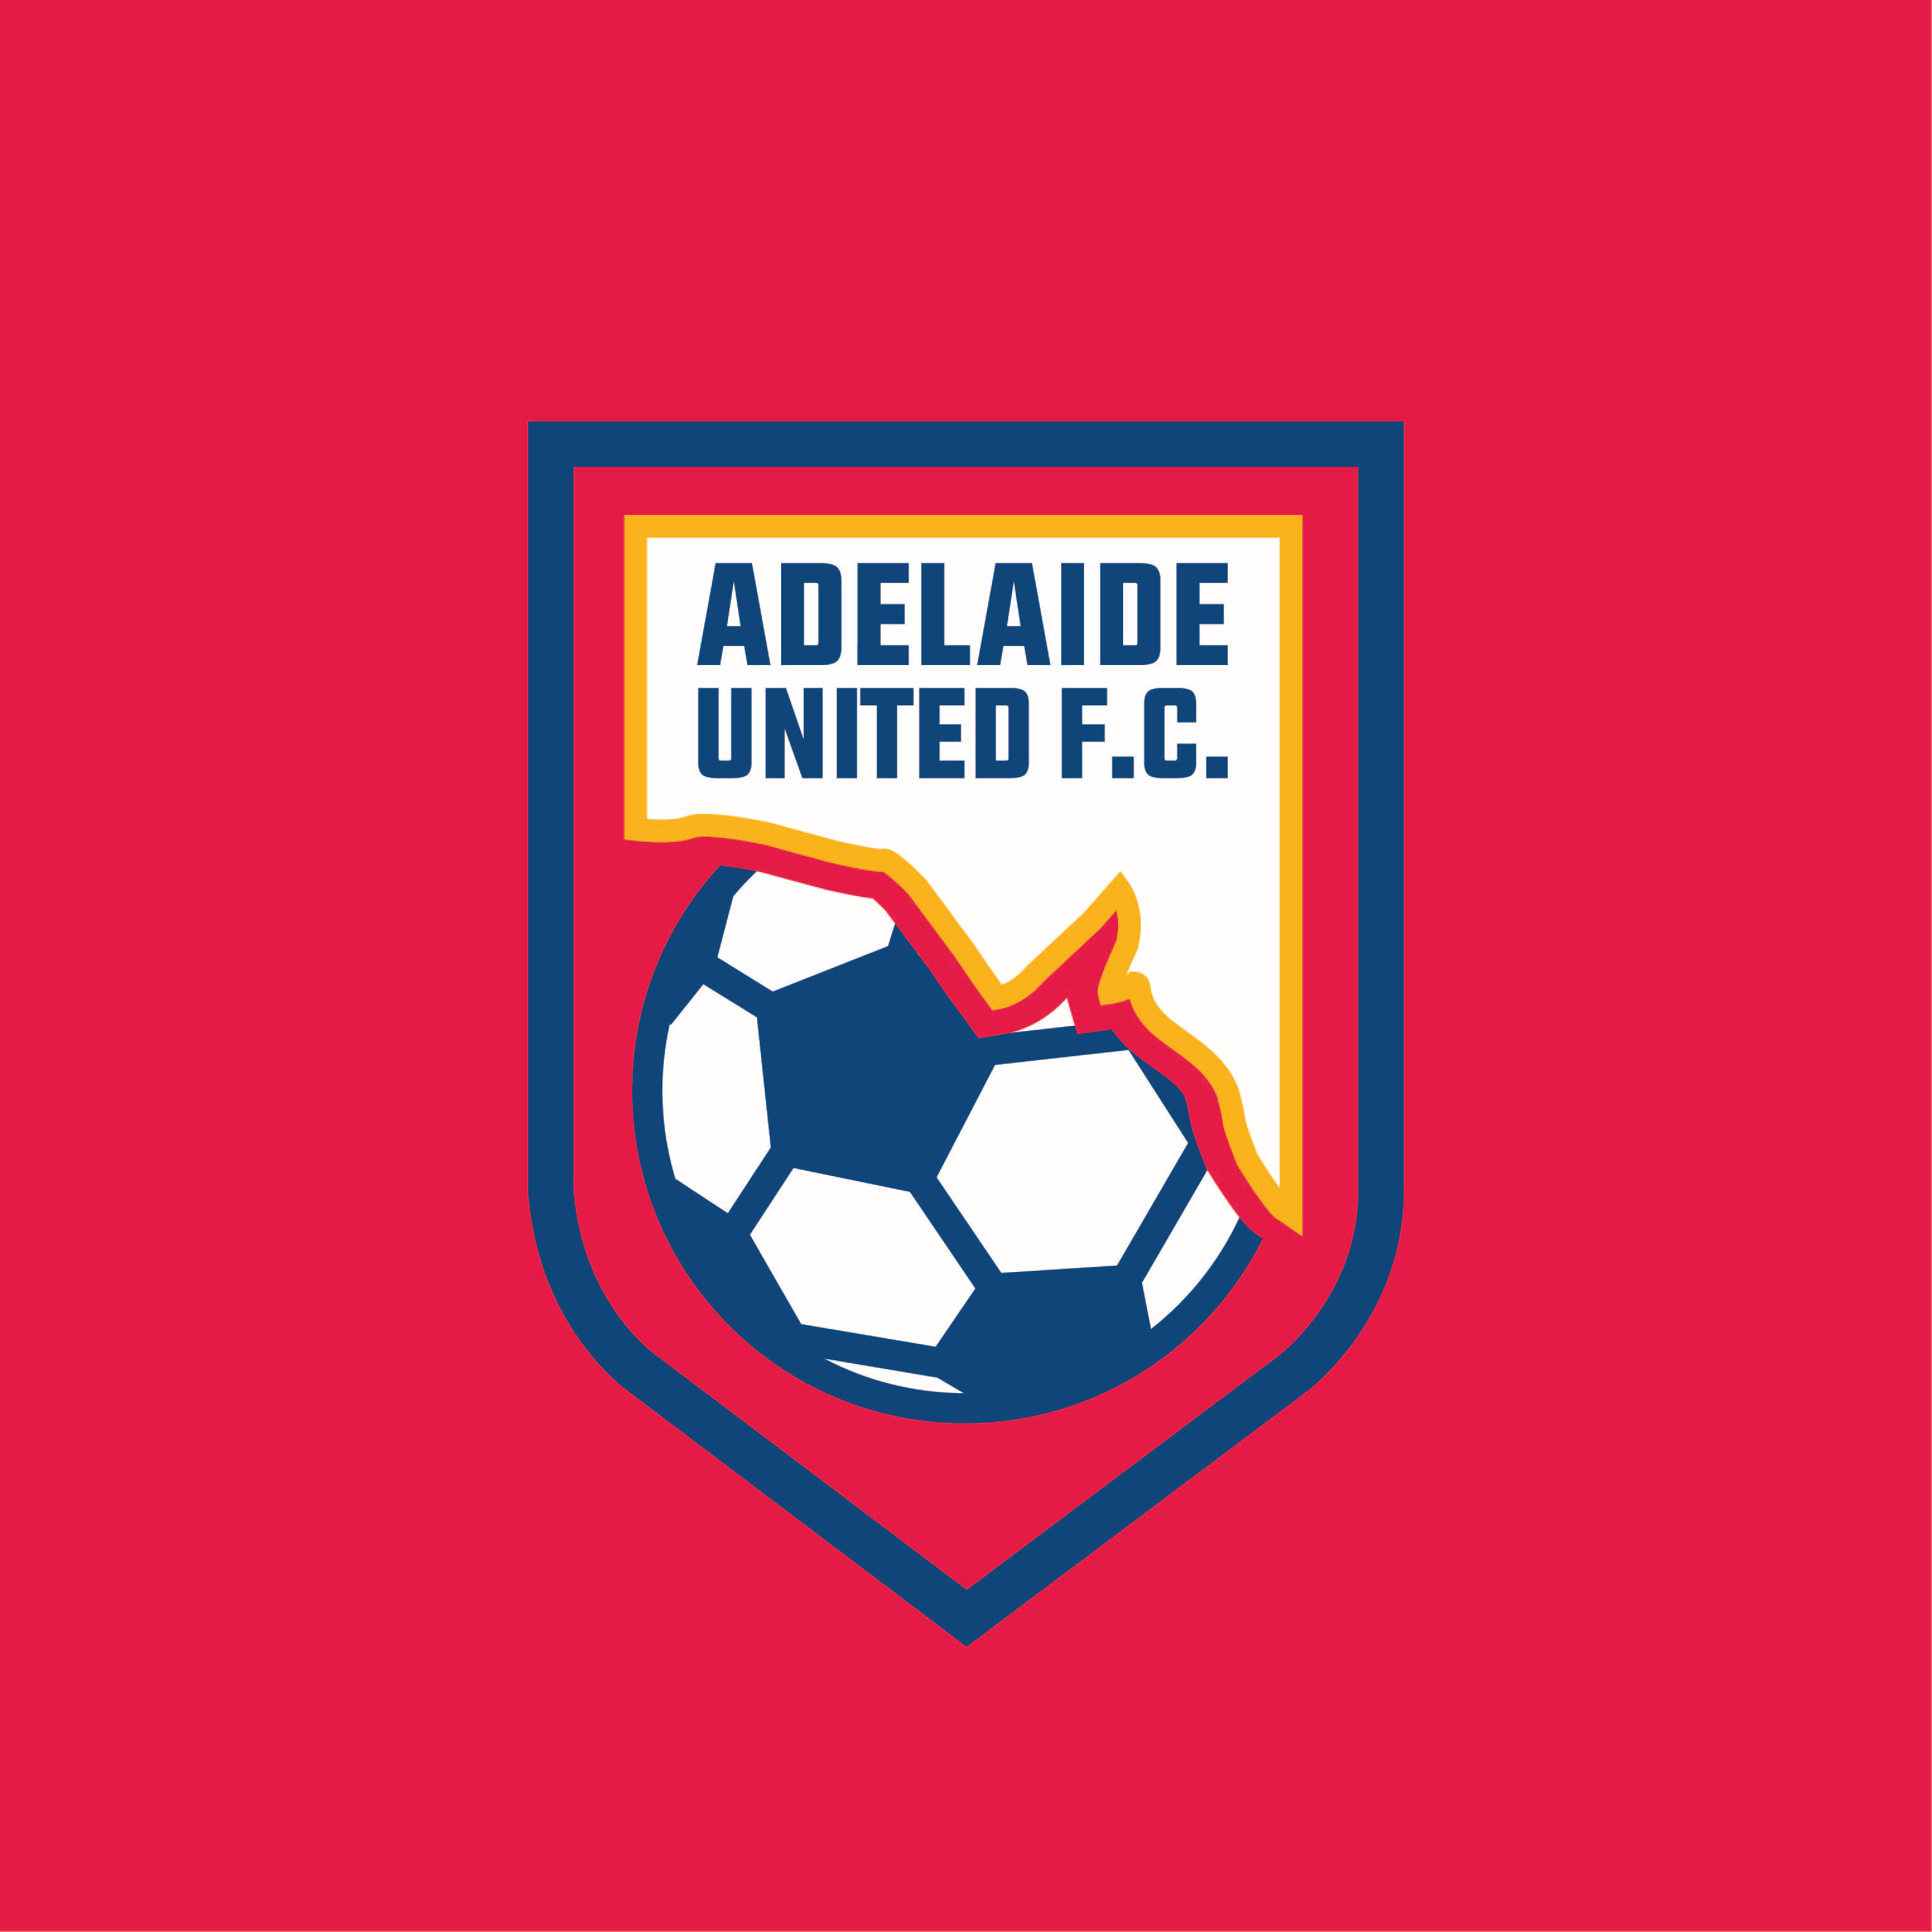 Luke Bray Designs Adelaide United